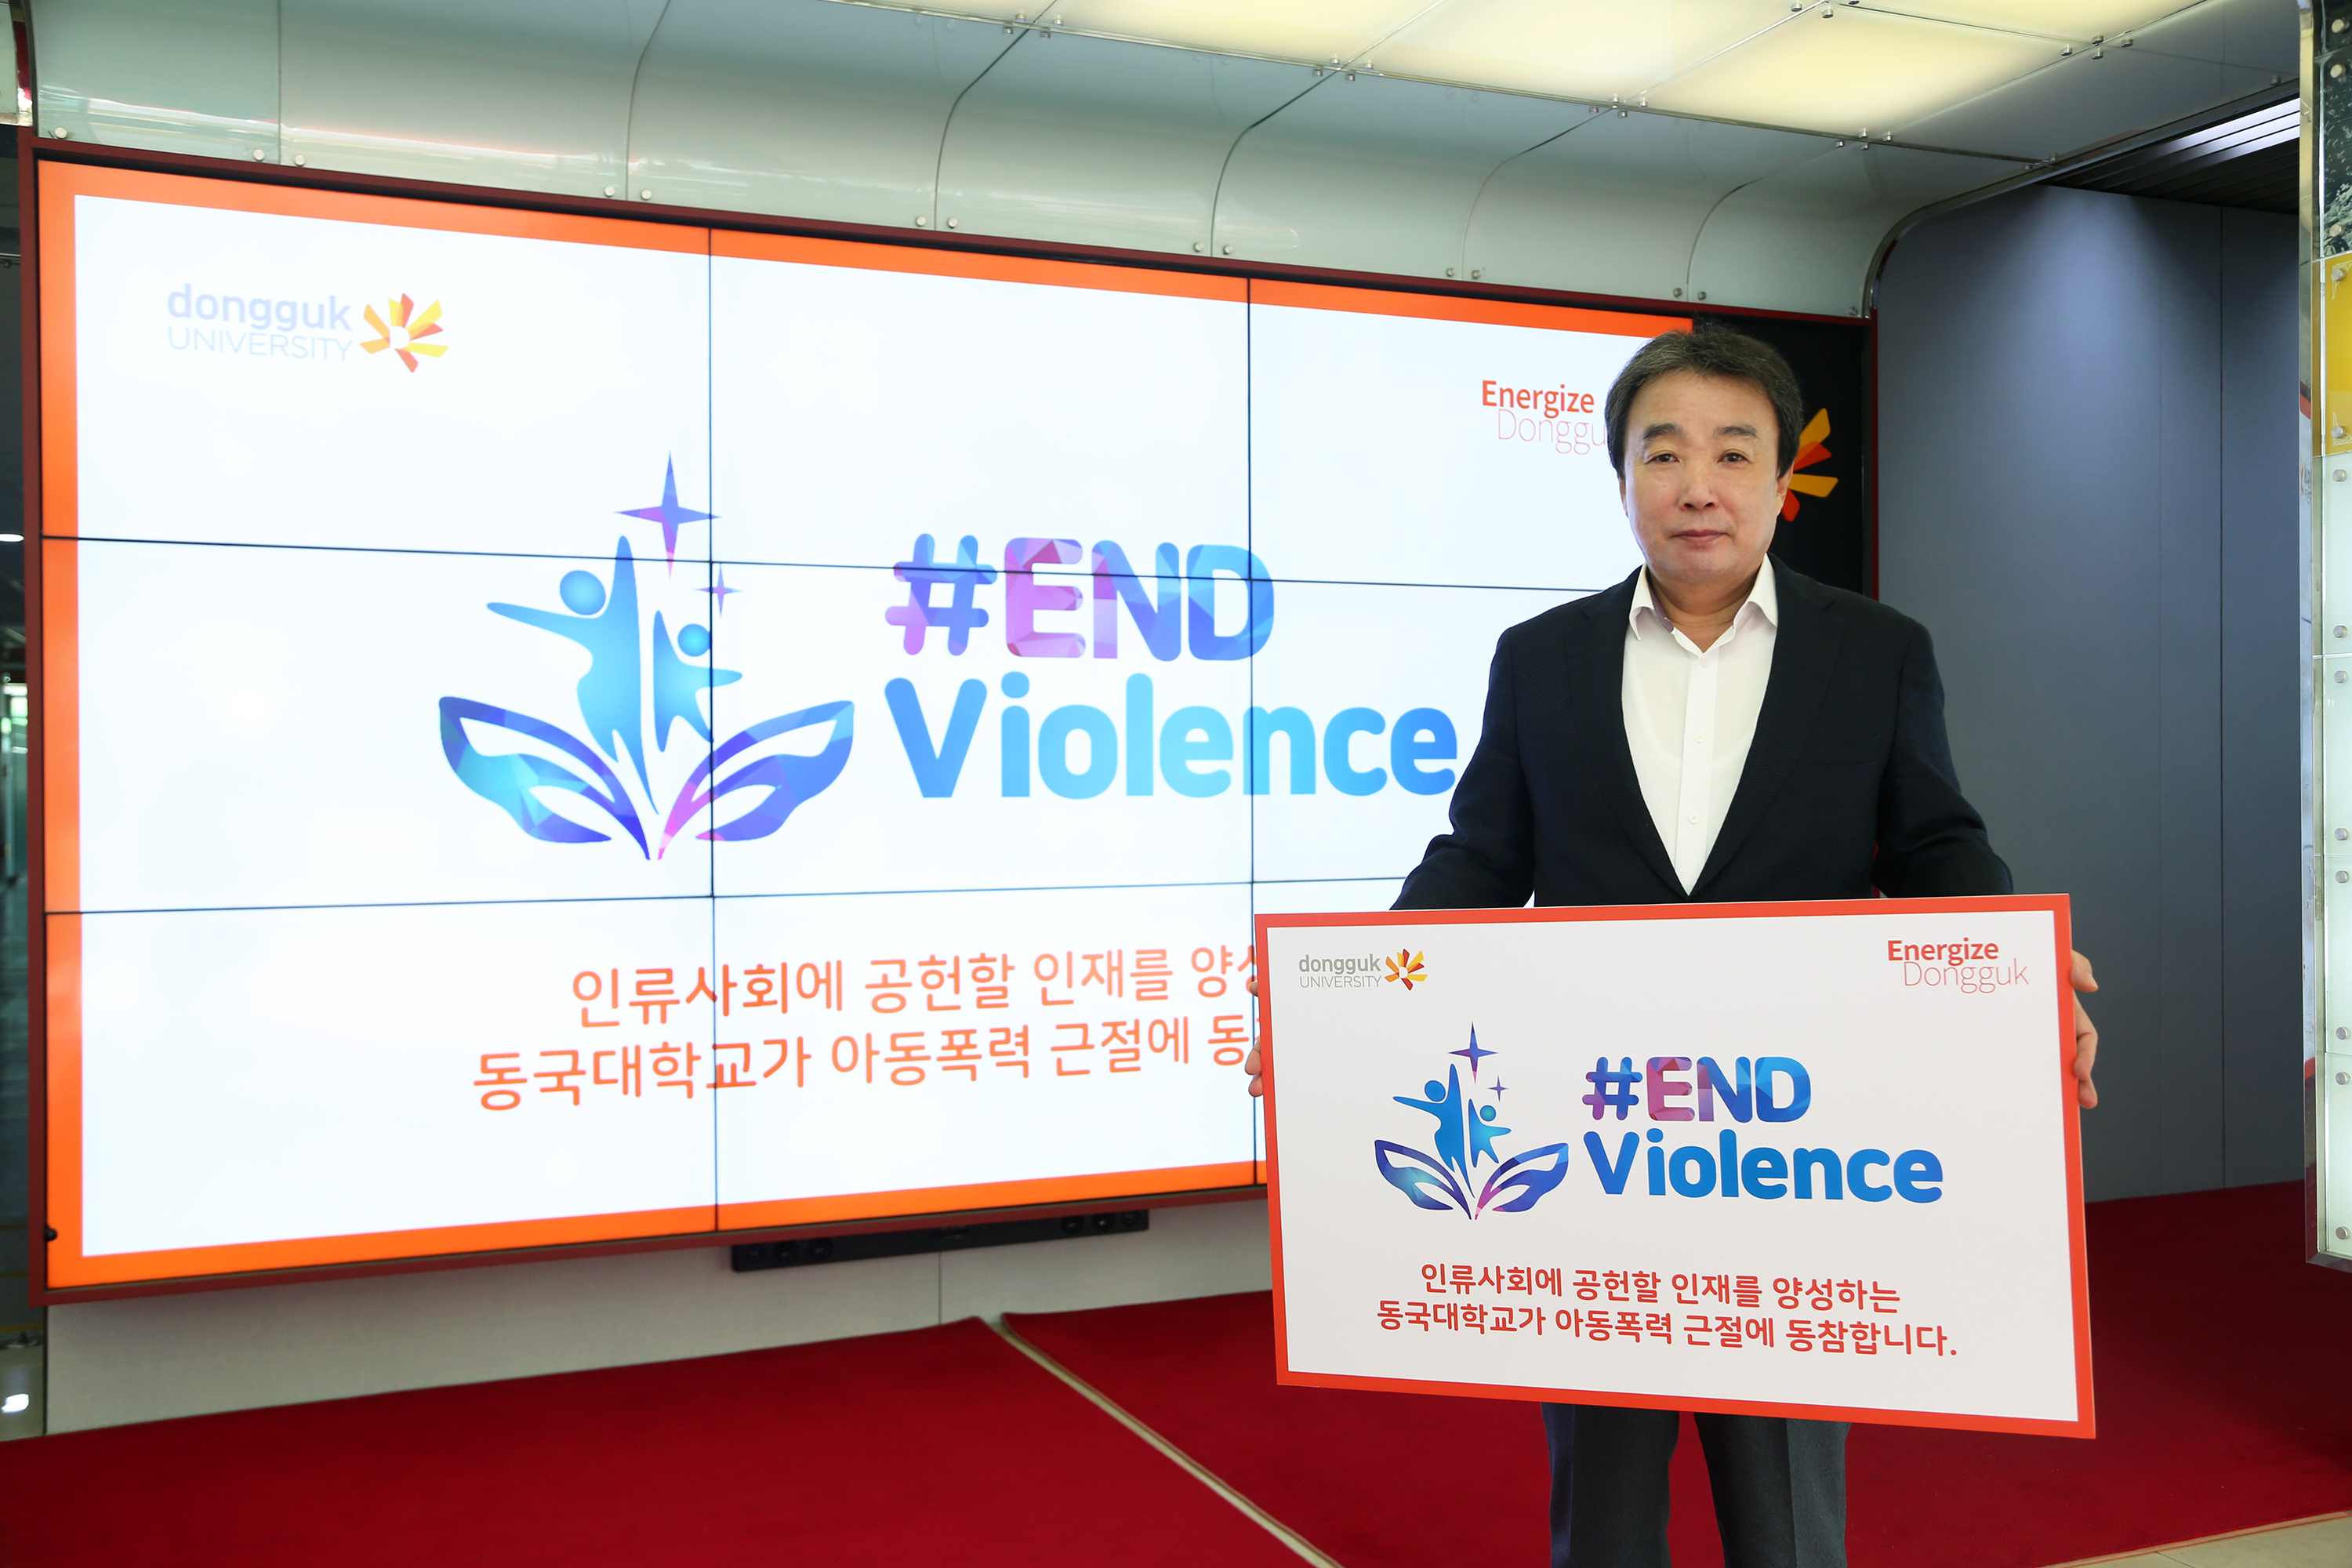 동국대 윤성이 총장, 아동폭력 근절 '엔드 바이올런스' 캠페인 참여